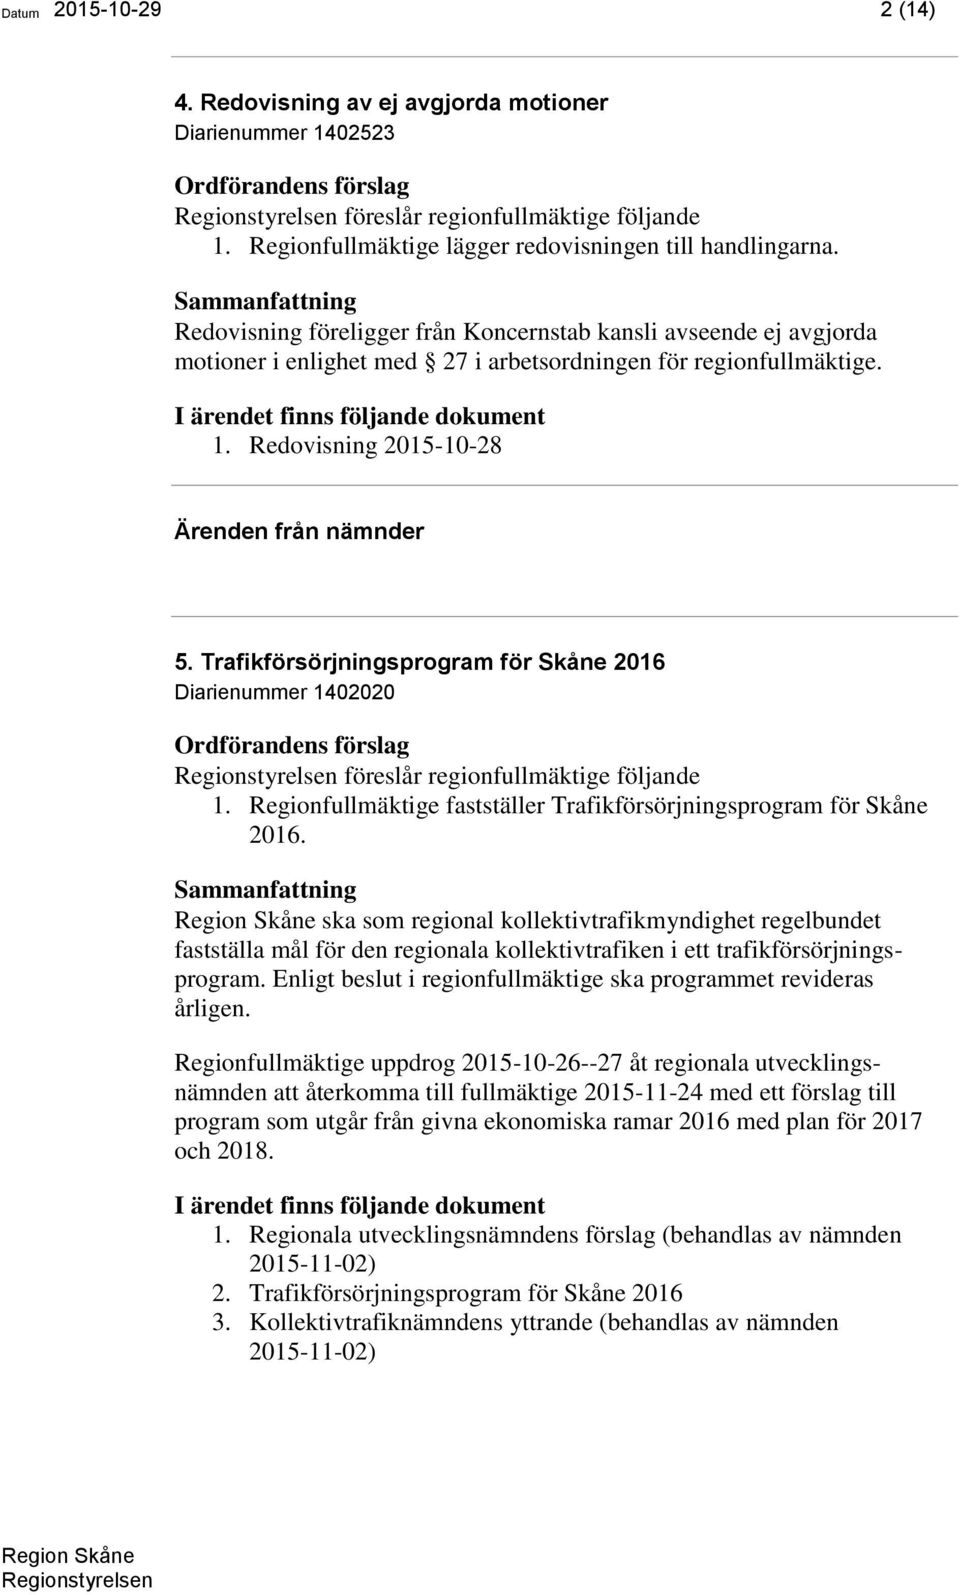 Trafikförsörjningsprogram för Skåne 2016 Diarienummer 1402020 föreslår regionfullmäktige följande 1. Regionfullmäktige fastställer Trafikförsörjningsprogram för Skåne 2016.